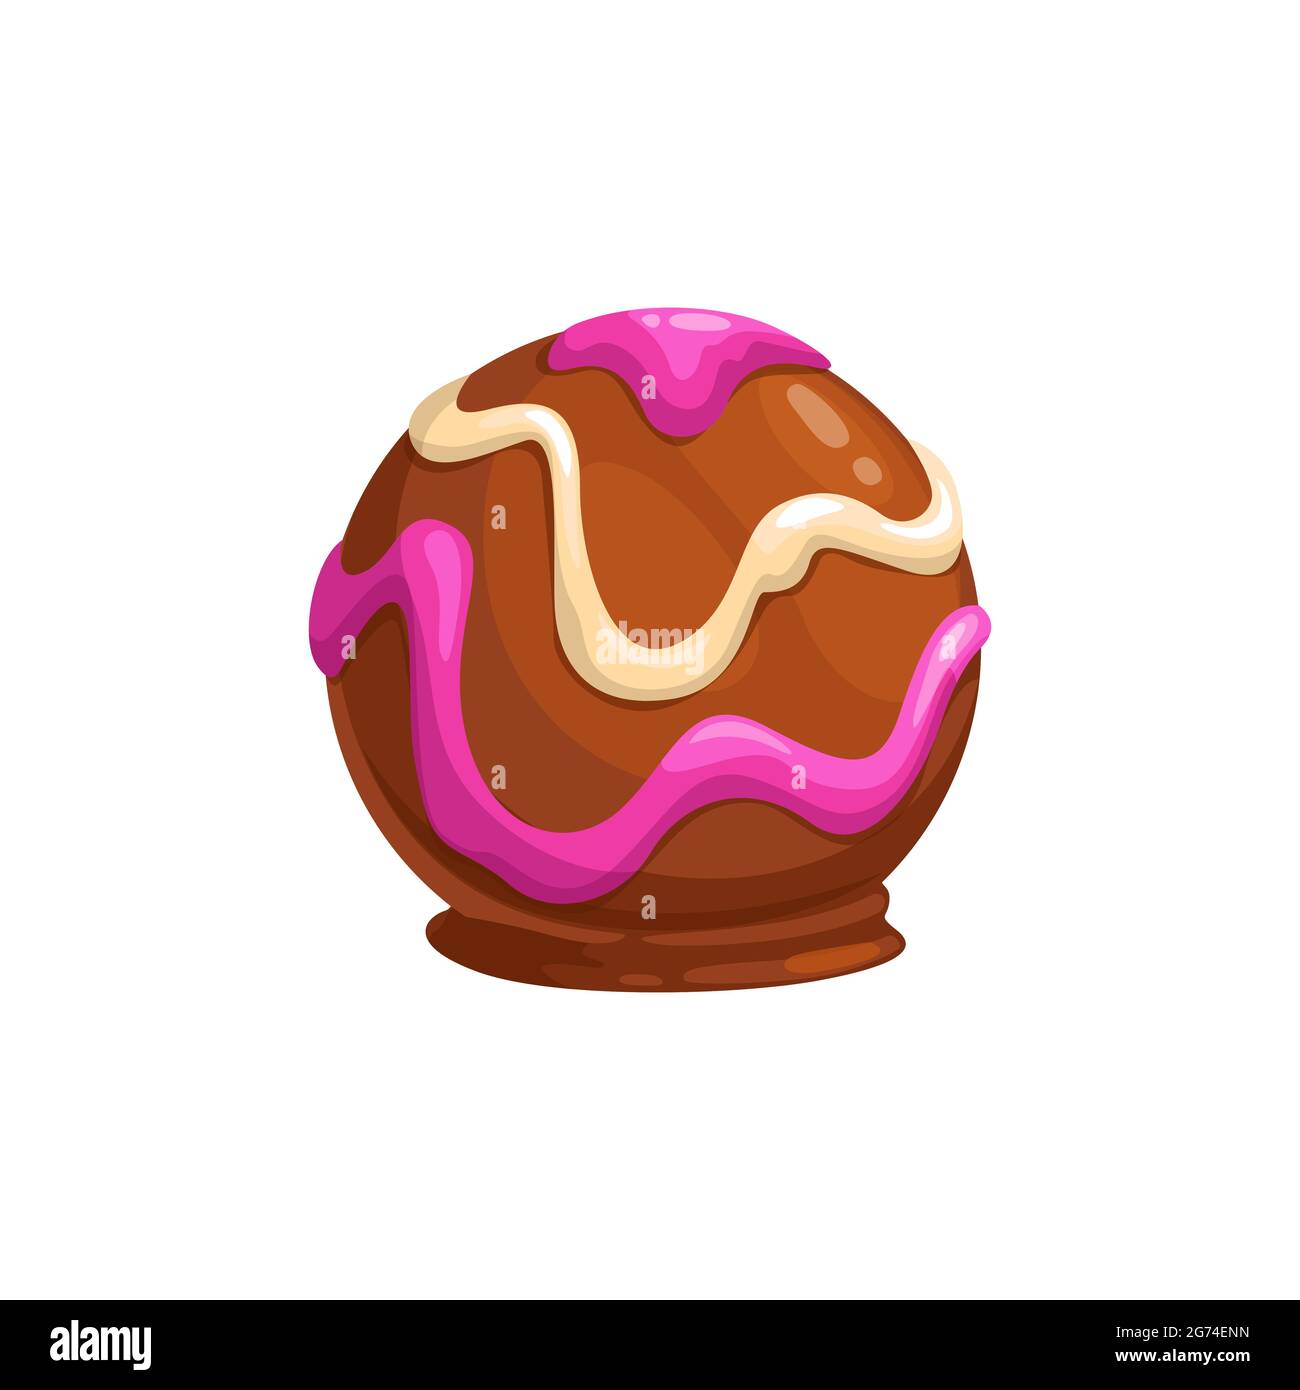 Vektor-Symbol für Schokoladenbonbons. Süßes Schoko-Dessert in Form von Kugel mit Praline, Nüssen oder Kakao, rosa und weißen Belag. Dunkle, Milch- oder Bitterschokolade, Stock Vektor